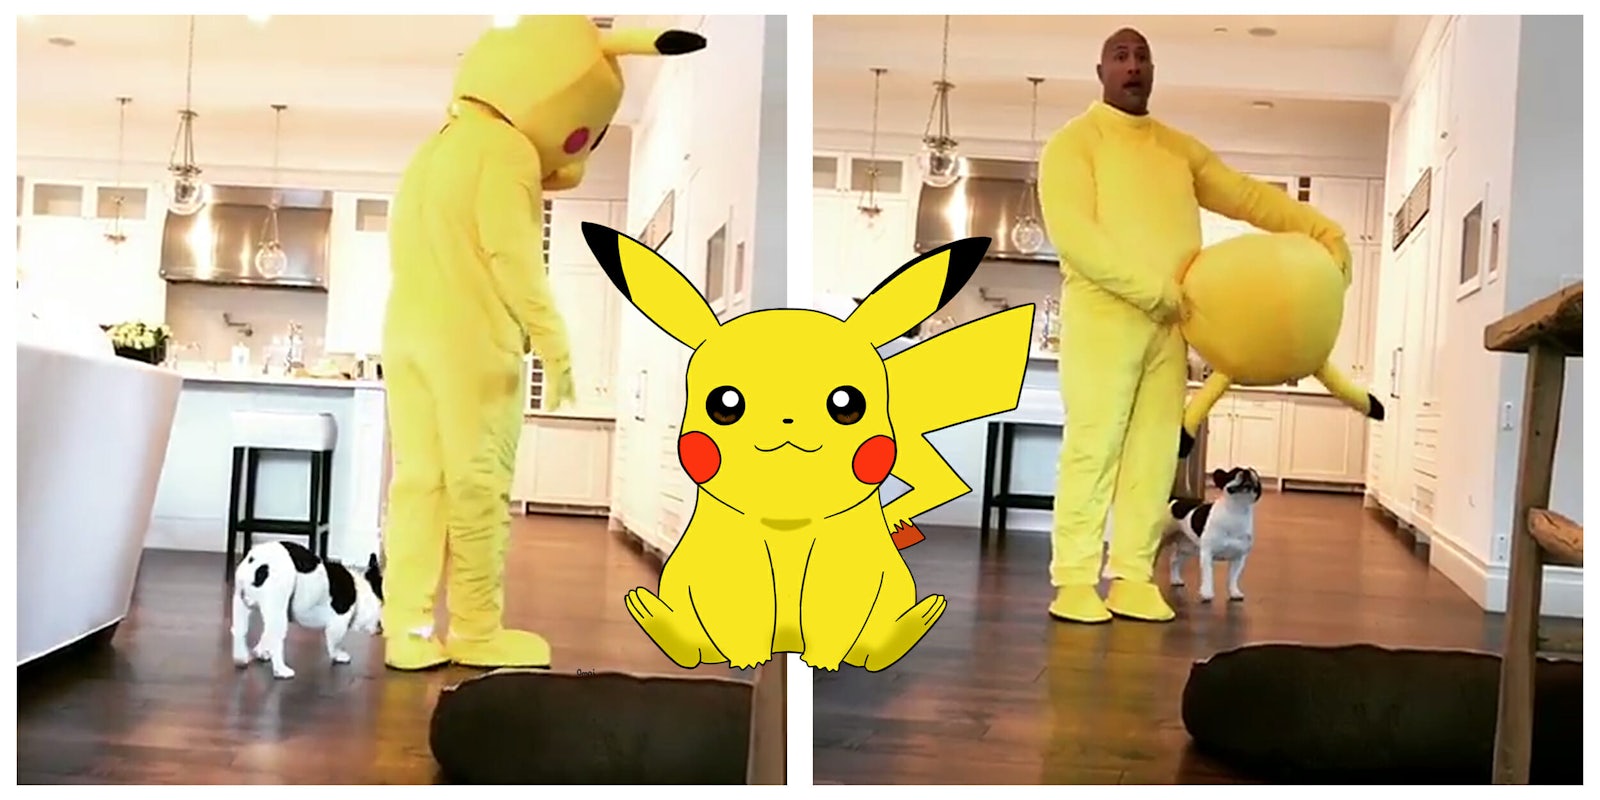 Dwayne 'The Rock' Johnson dressed as Pikachu Pokemon